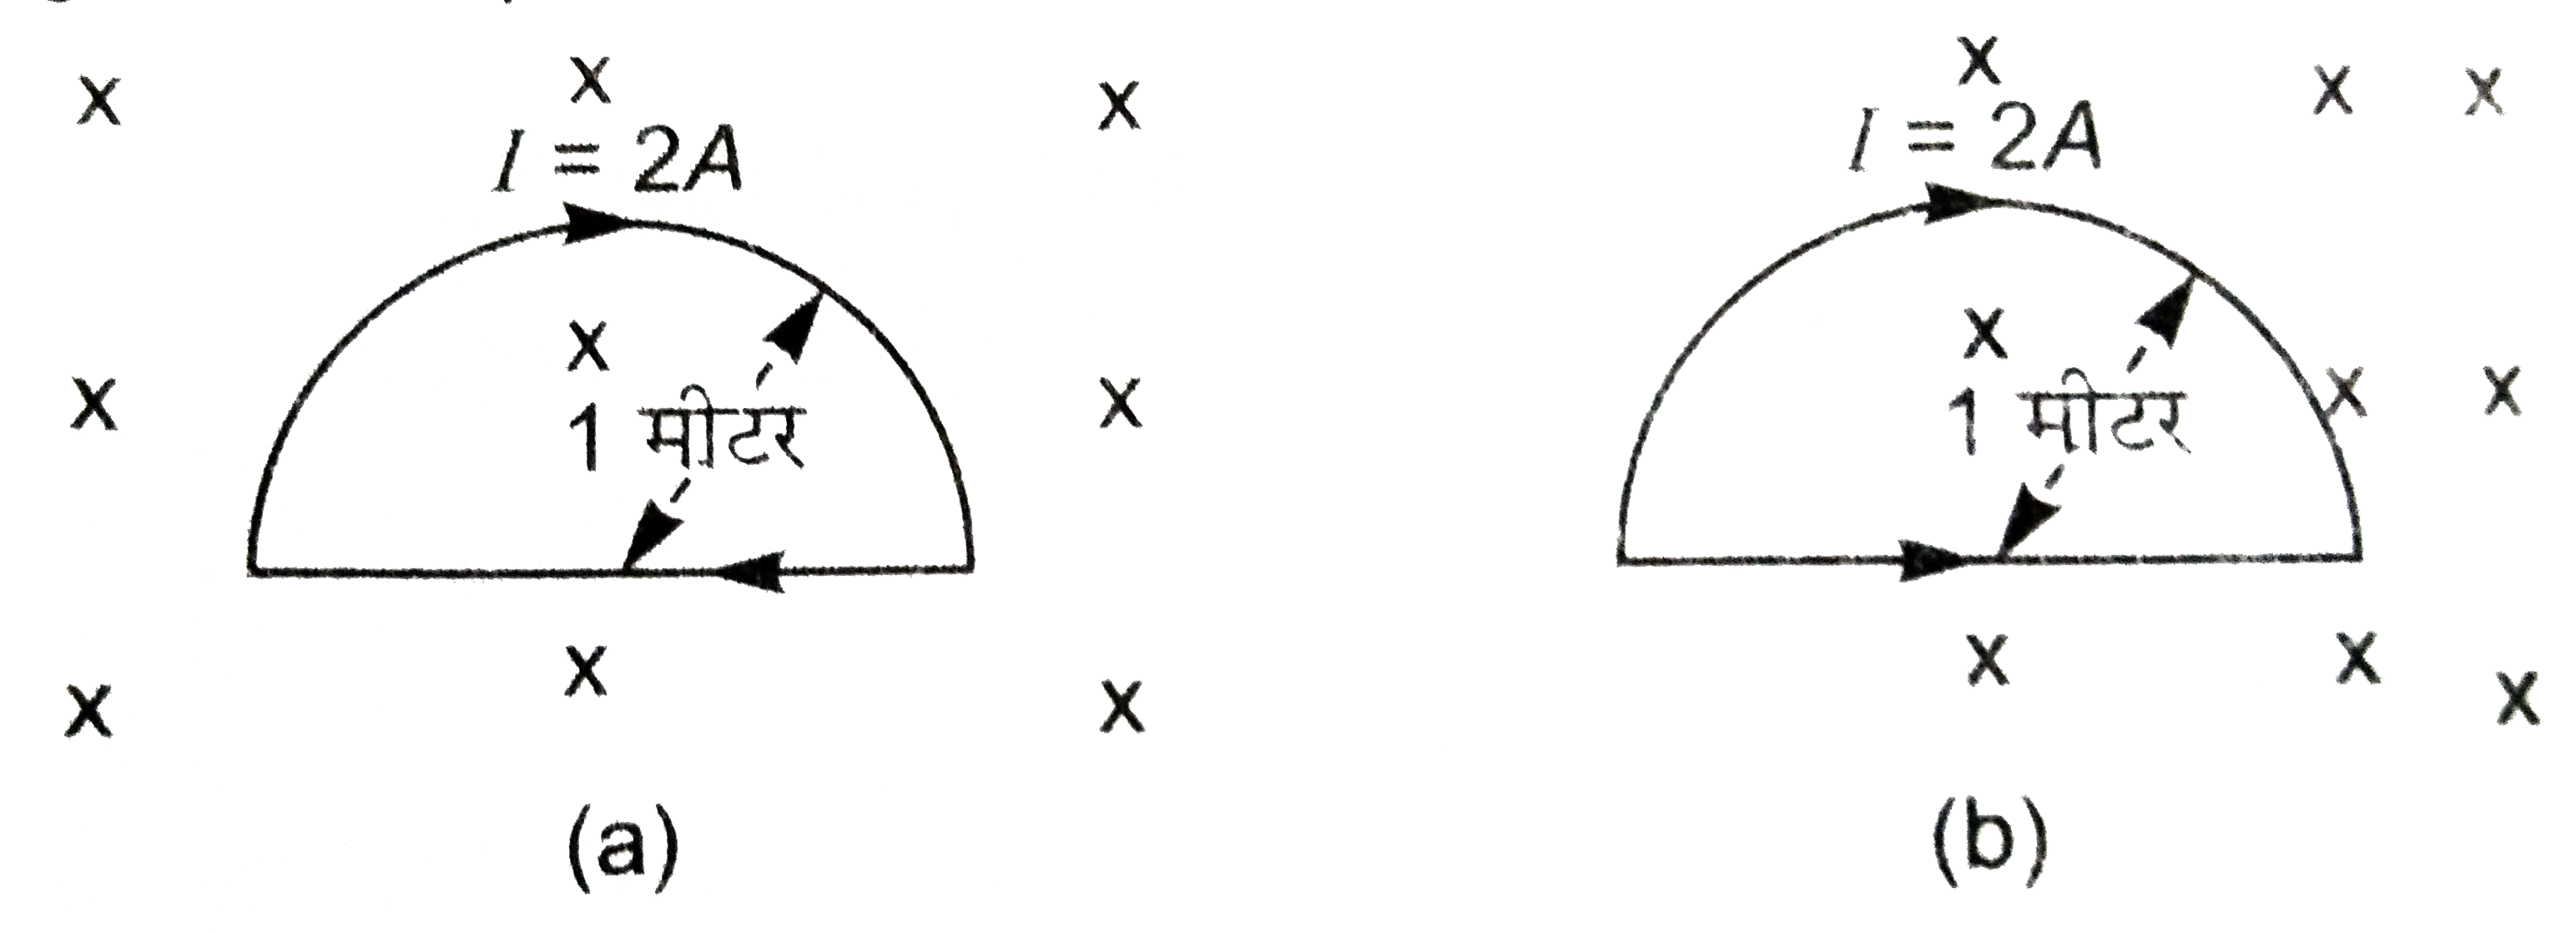 चित्र (a ) तथा (b)  में एकसमान क्षेत्र में स्थित अर्द्धवृत्तकार लूप पर कार्यरत चुंबकीय बल की गड़ना कीजिये जबकि चुंबकीय क्षेत्र B=1.0 टेस्ला है।